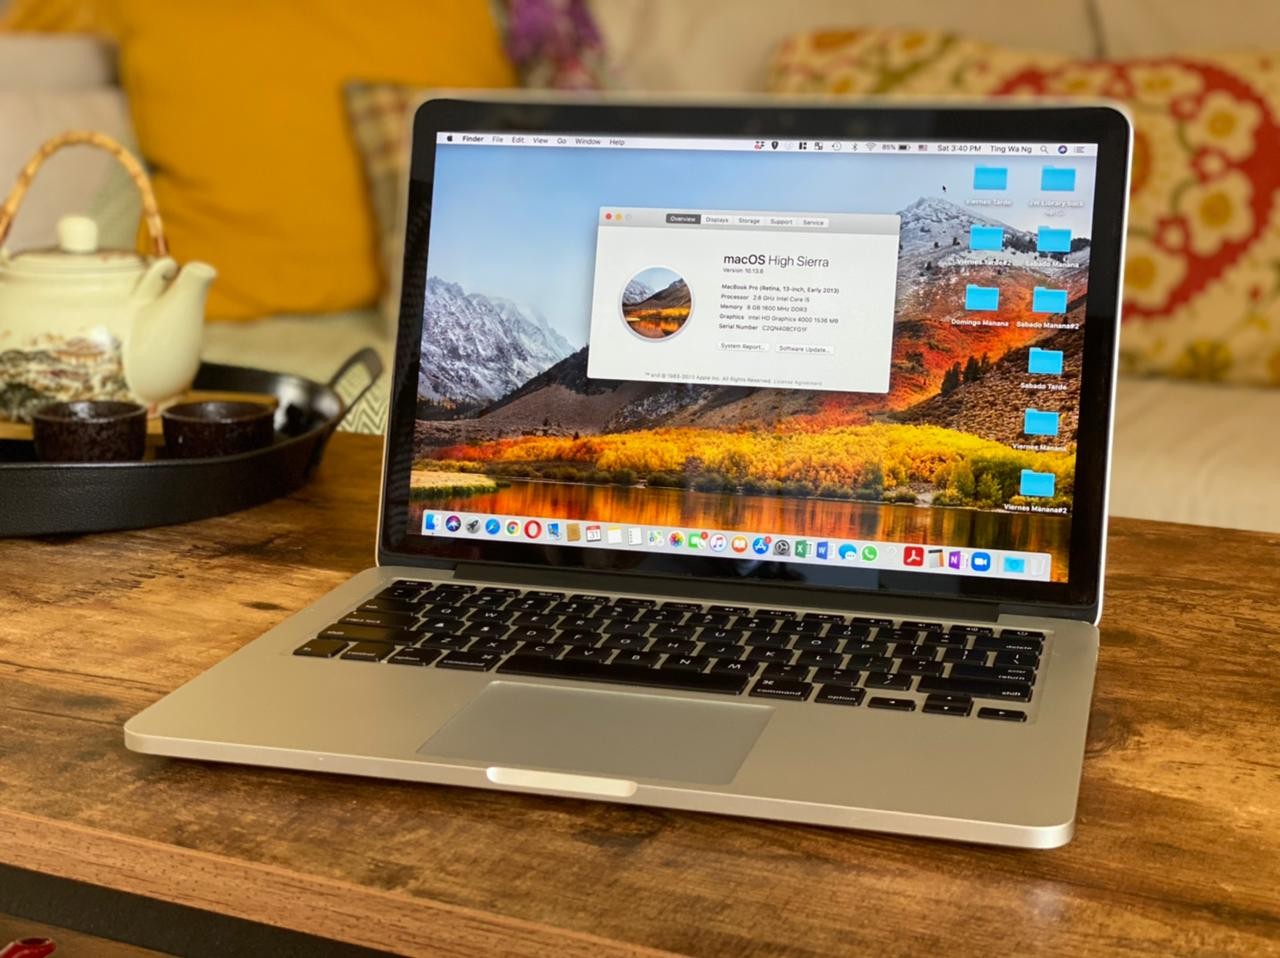 computadoras y laptops - MacBook Pro 2013 ICore5 8Ram 256GB Excelente Condiciones 